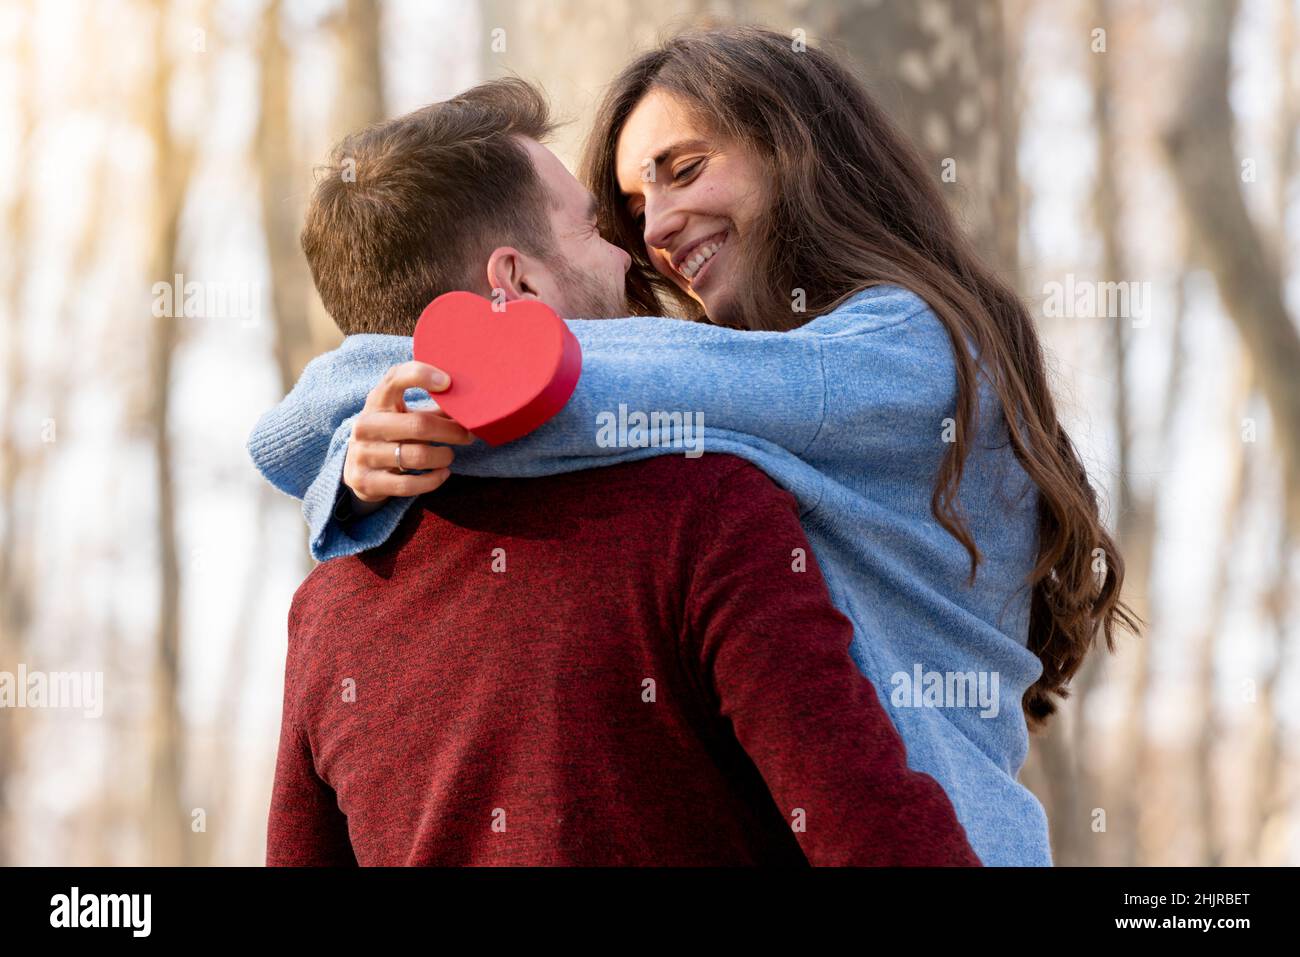 L'homme surprend sa petite amie avec un cadeau en forme de cœur et elle l'embrasse Banque D'Images